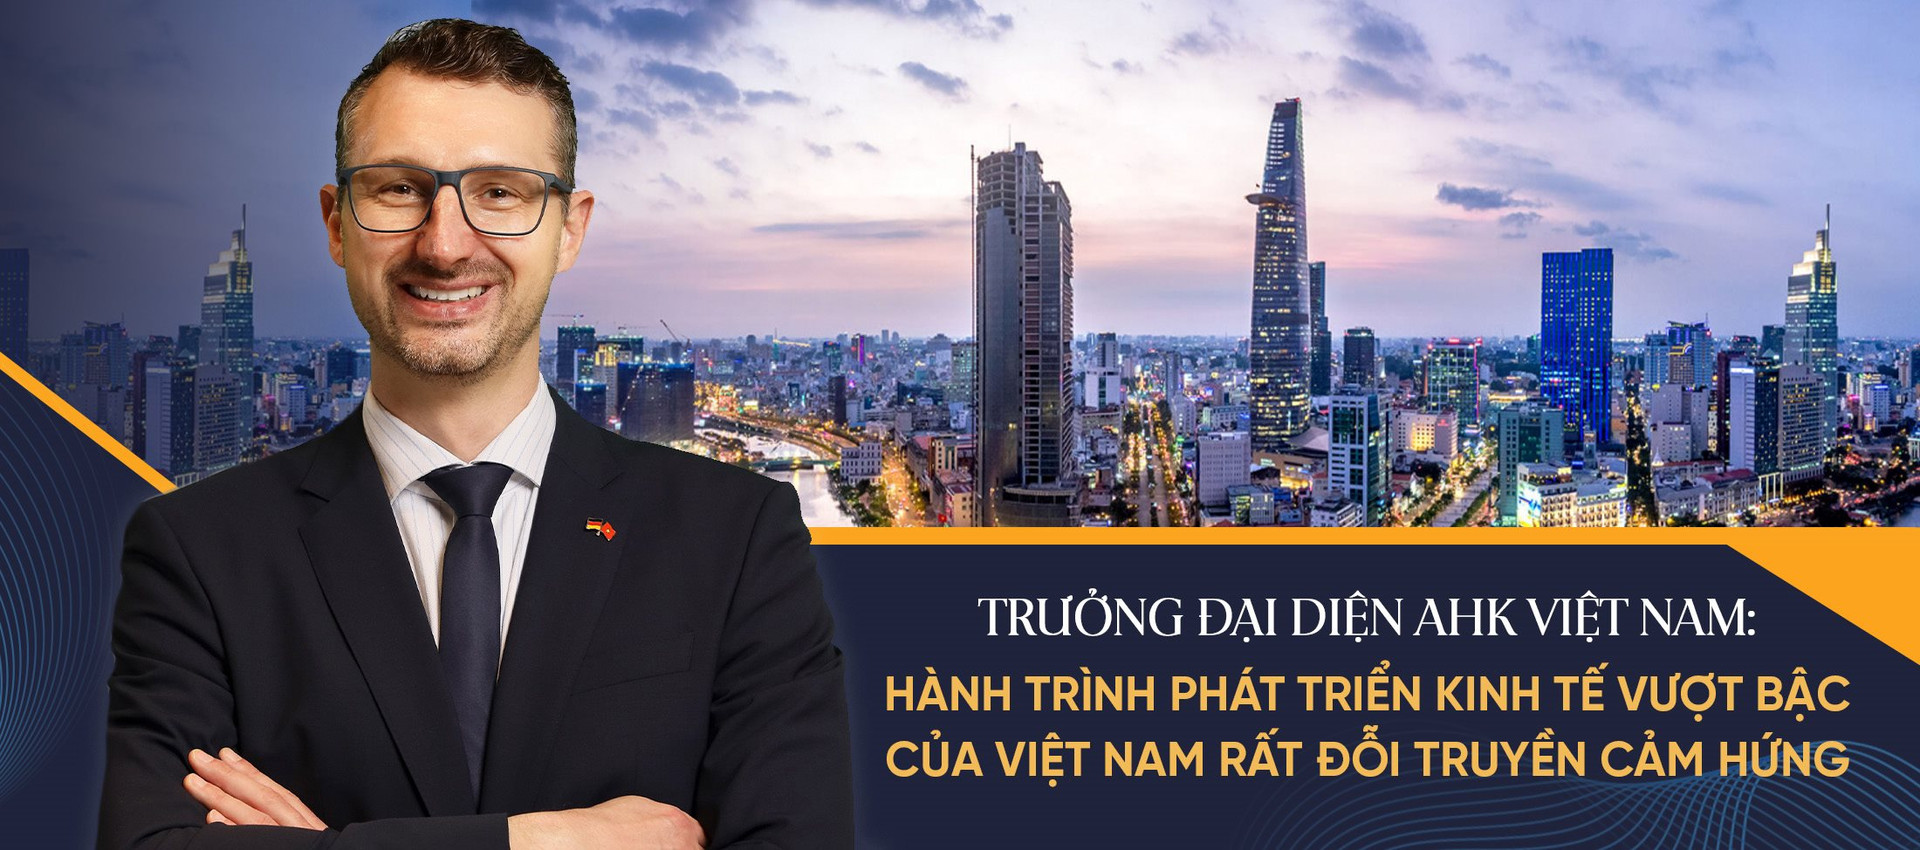 Trưởng Đại diện phòng CN & TM Đức: Hành trình phát triển kinh tế vượt bậc của Việt Nam rất đỗi truyền cảm hứng, đây là thời điểm chín muồi để các doanh nghiệp Đức đầu tư